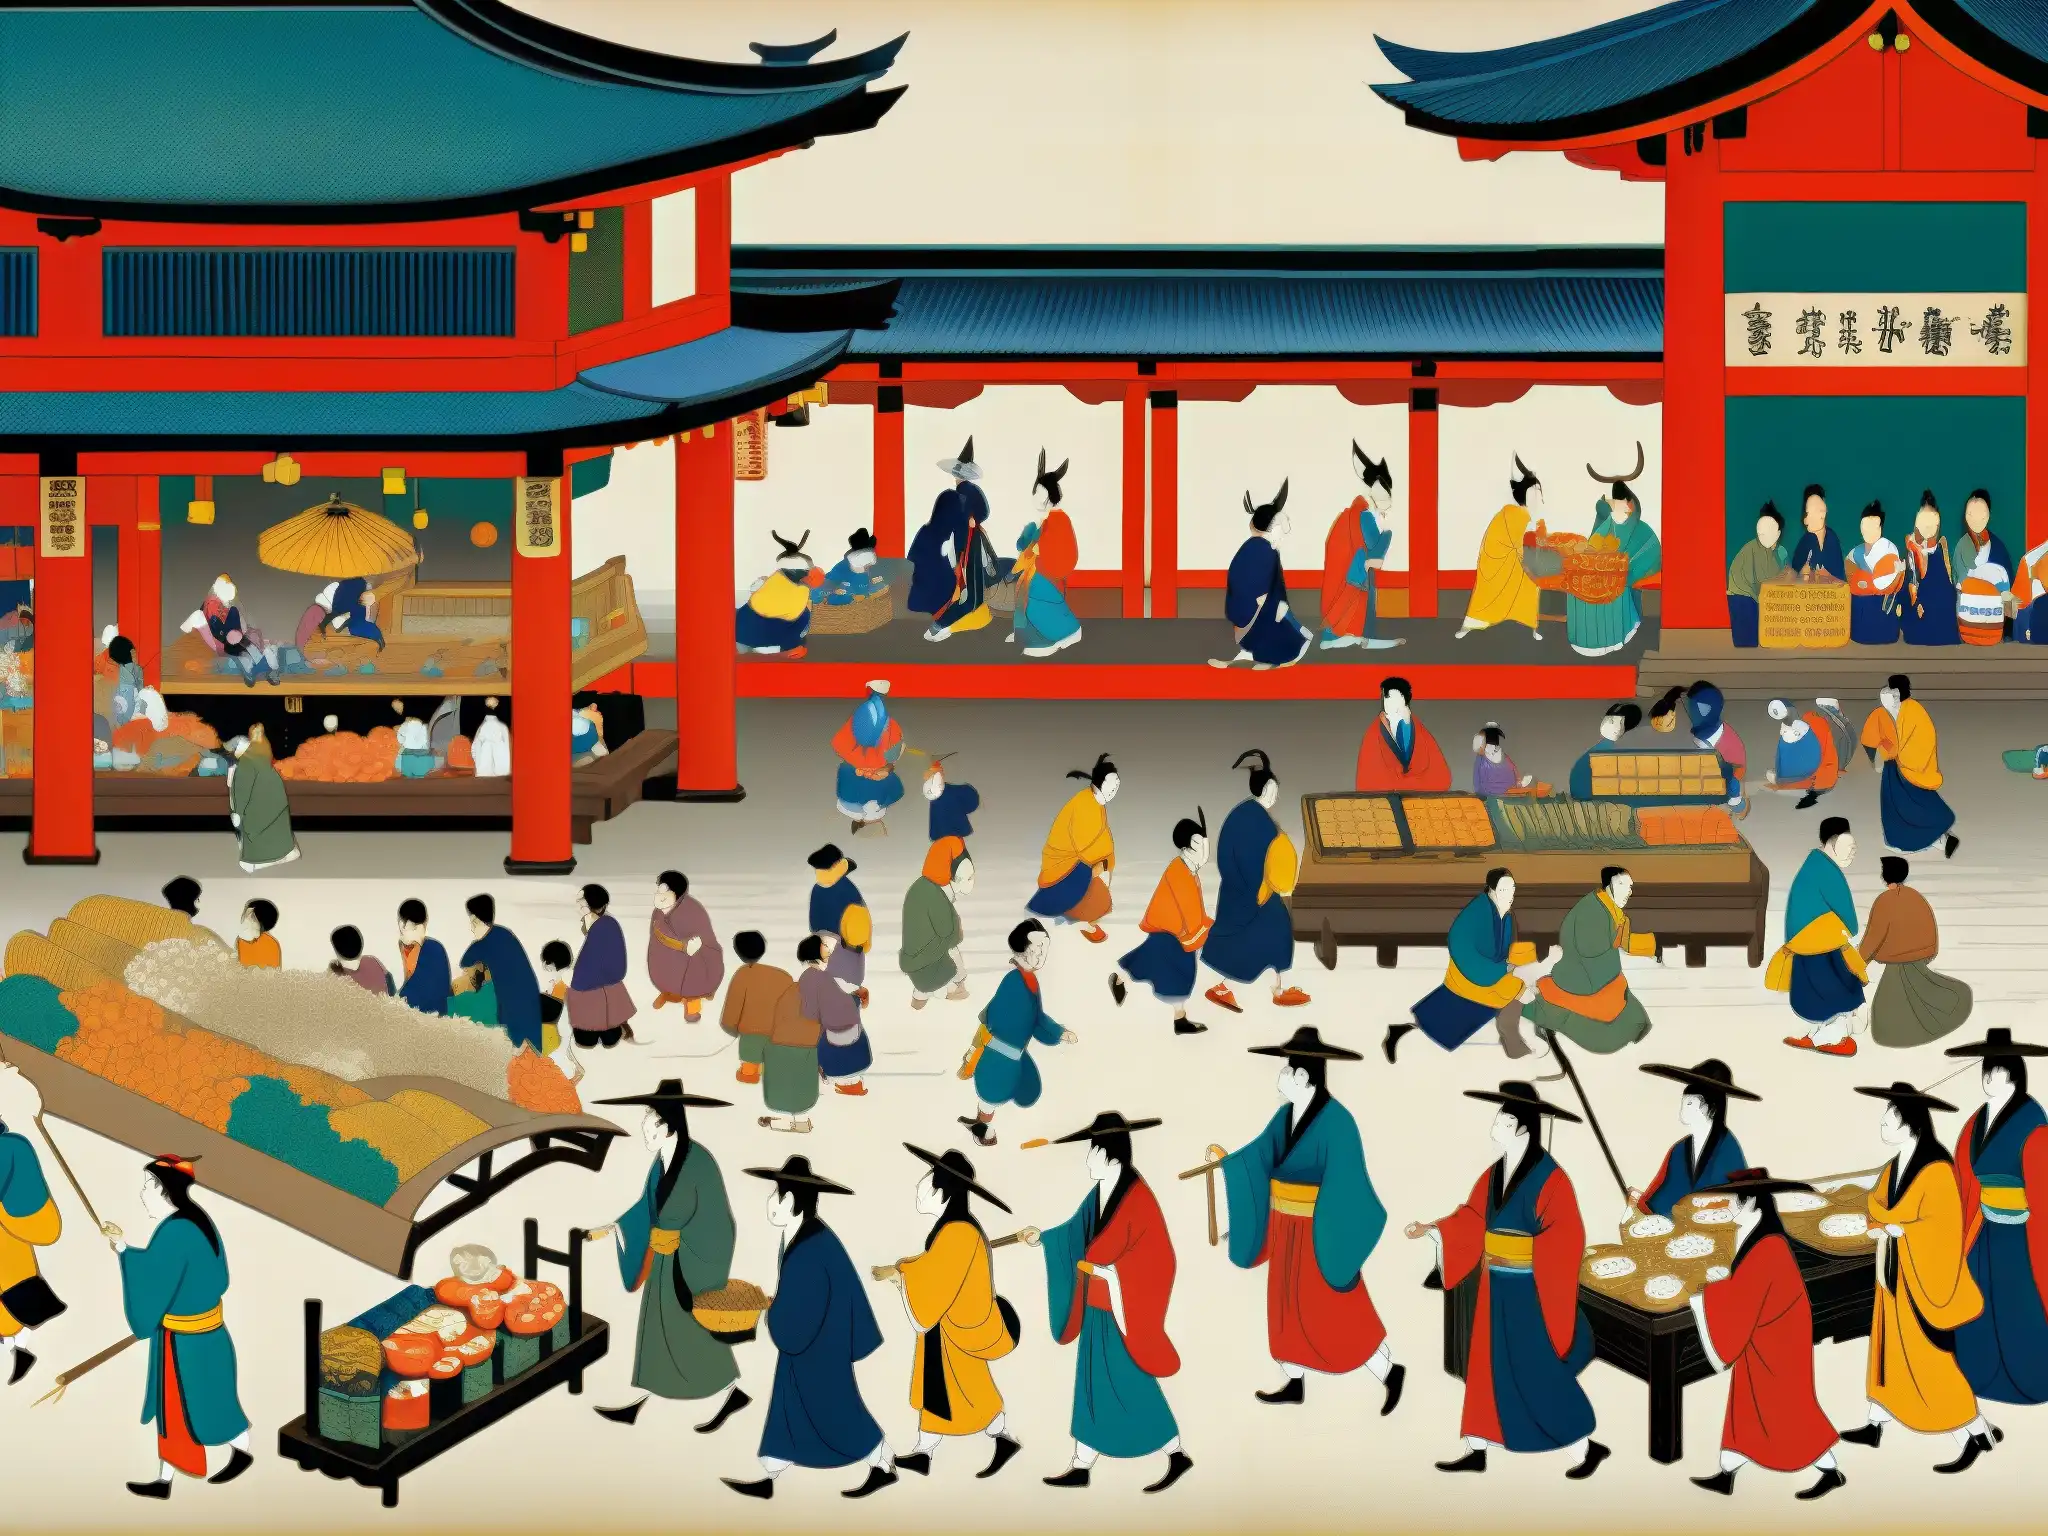 Una pintura detallada de un mercado japonés con Yōkai, seres misteriosos de la cultura japonesa, que muestran su influencia en la cultura pop